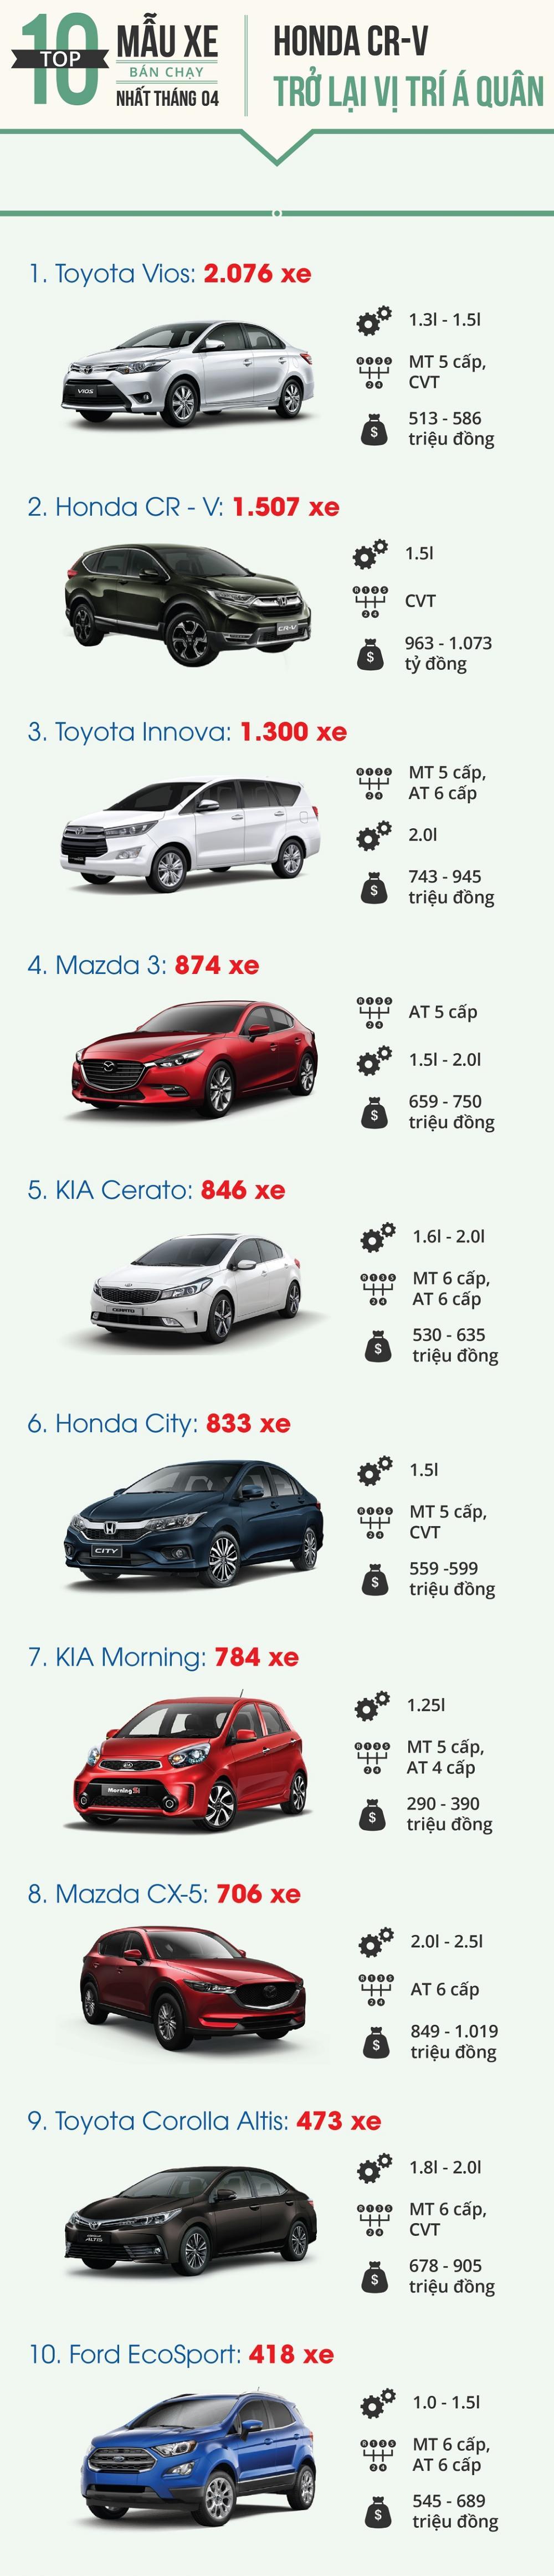 Honda CR-V bất ngờ bán chạy thứ 2 toàn thị trường Việt tháng 4/2018,,